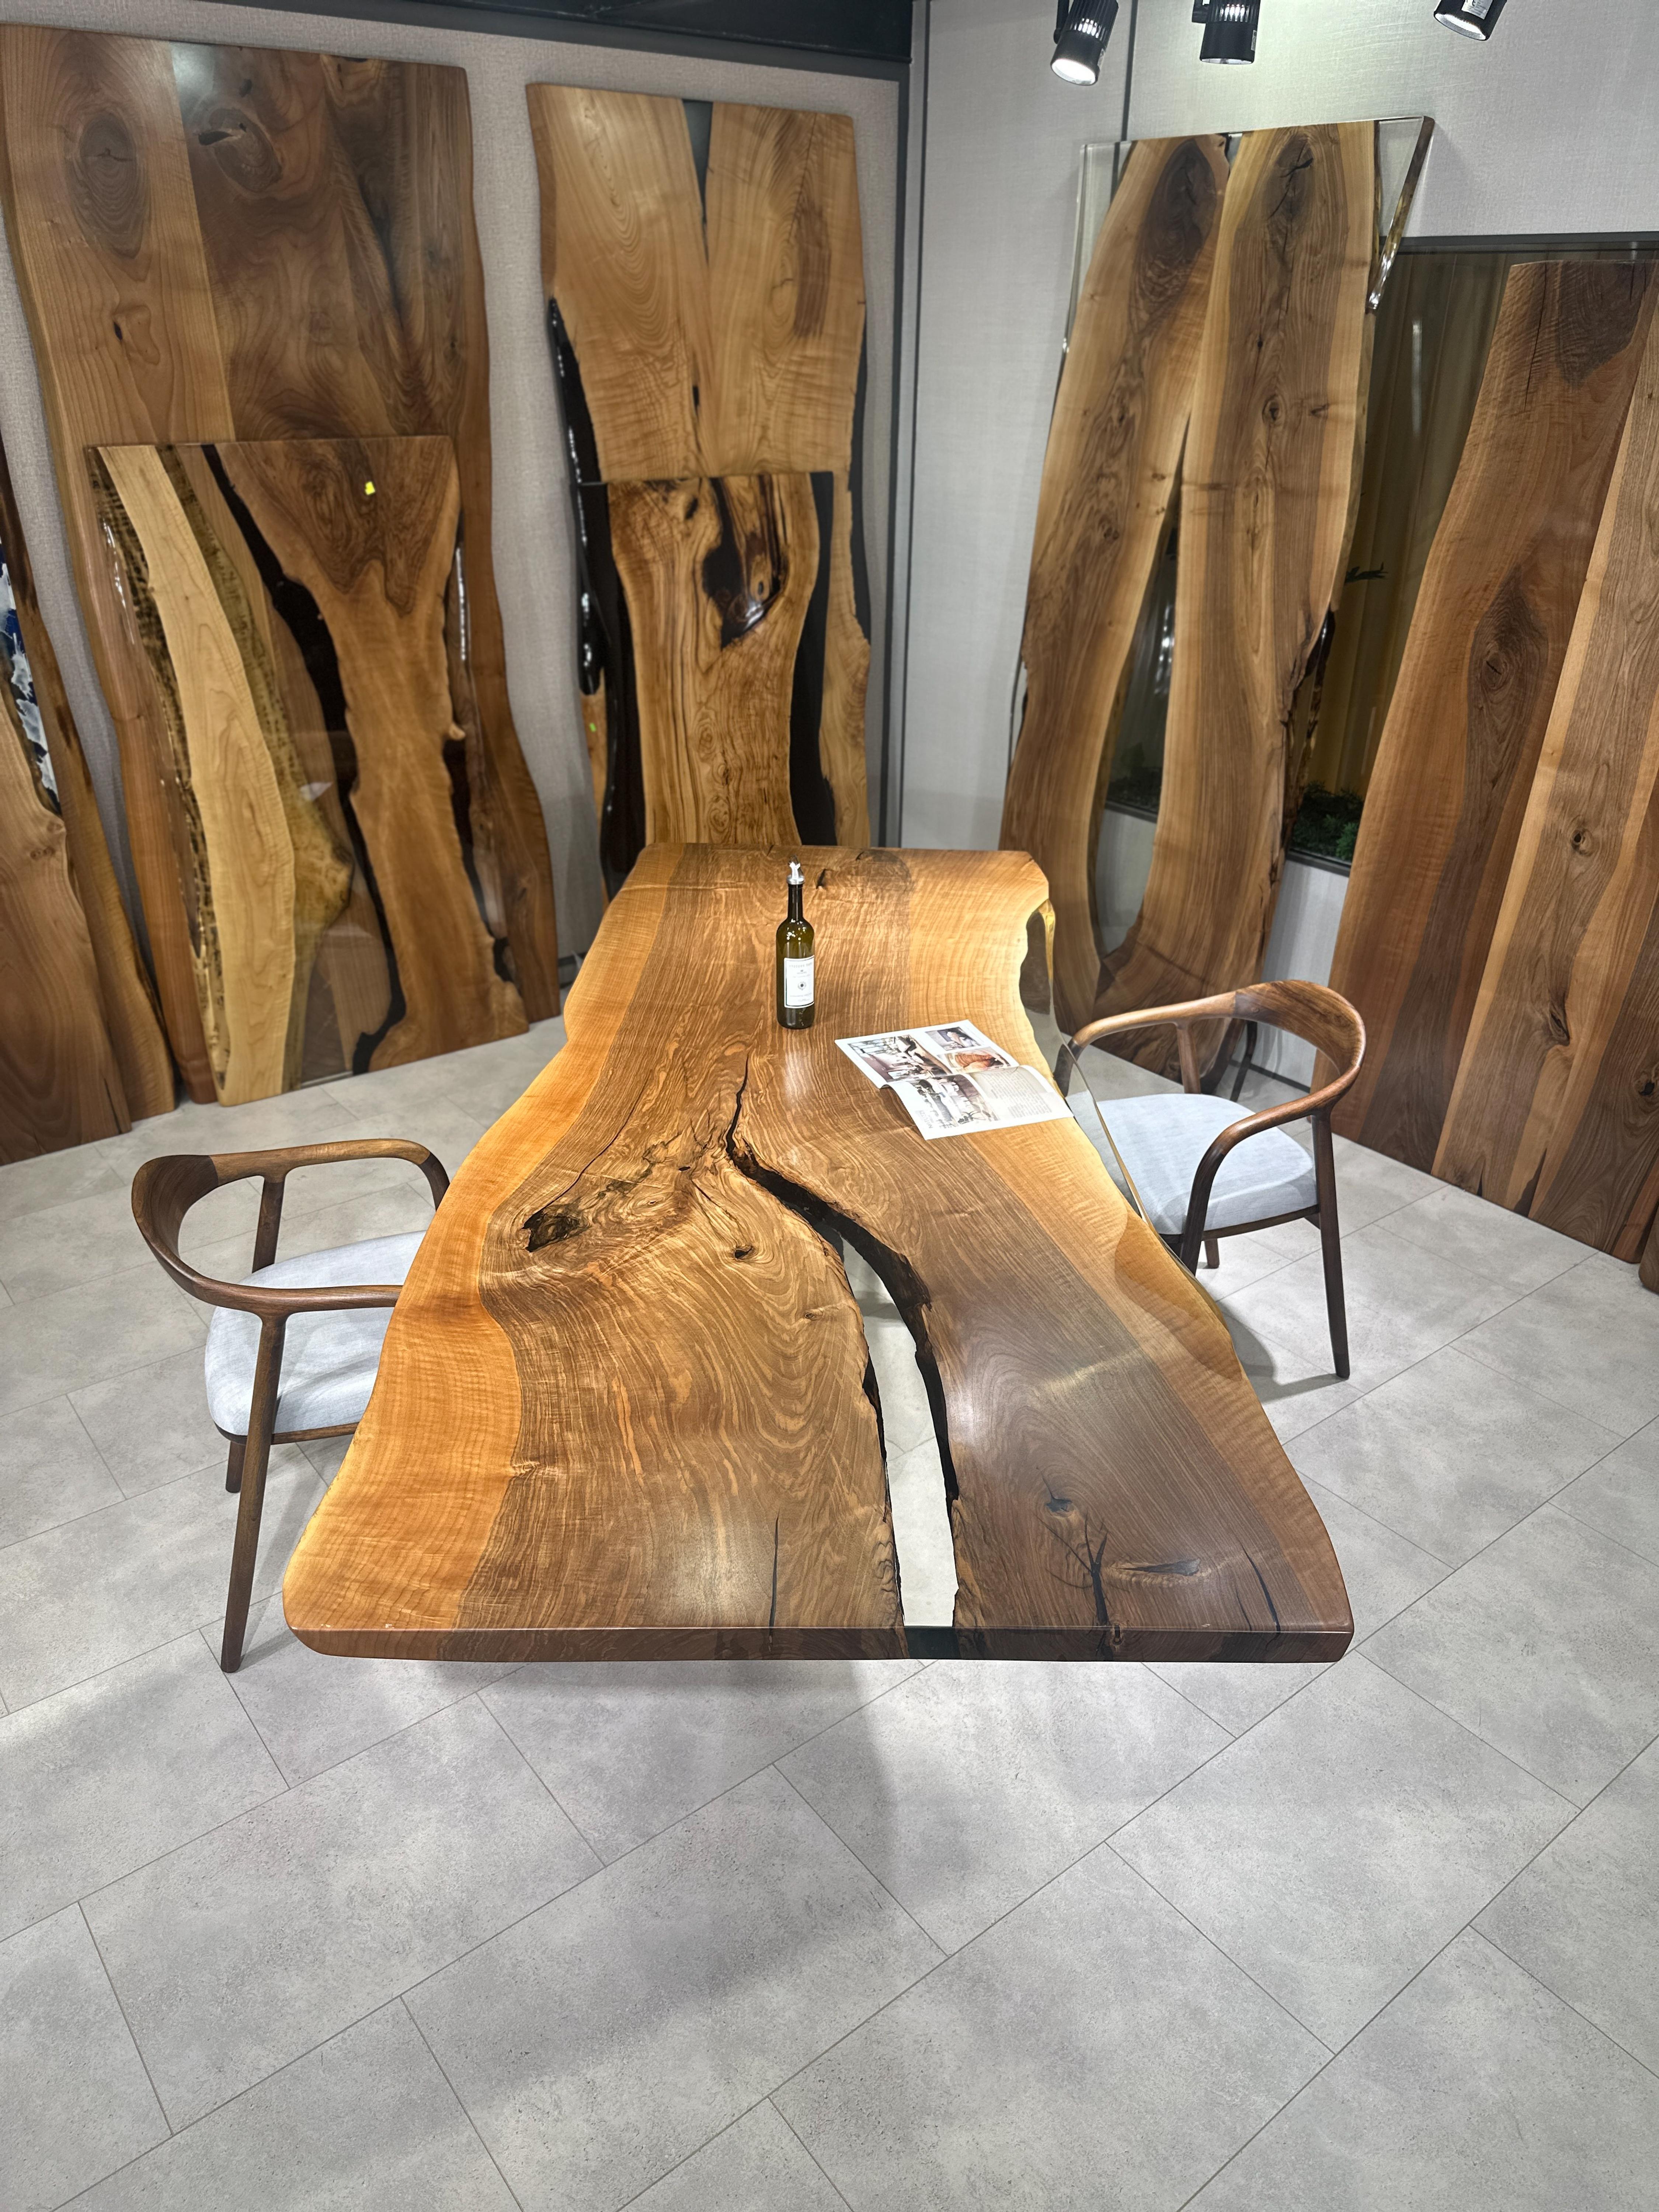 Table de salle à manger en résine époxy claire sur mesure en noyer 

Cette table est fabriquée en bois de noyer vieux de 500 ans. Les veines et la texture du bois décrivent l'aspect d'un bois de noyer naturel.
Elle peut être utilisée comme table de